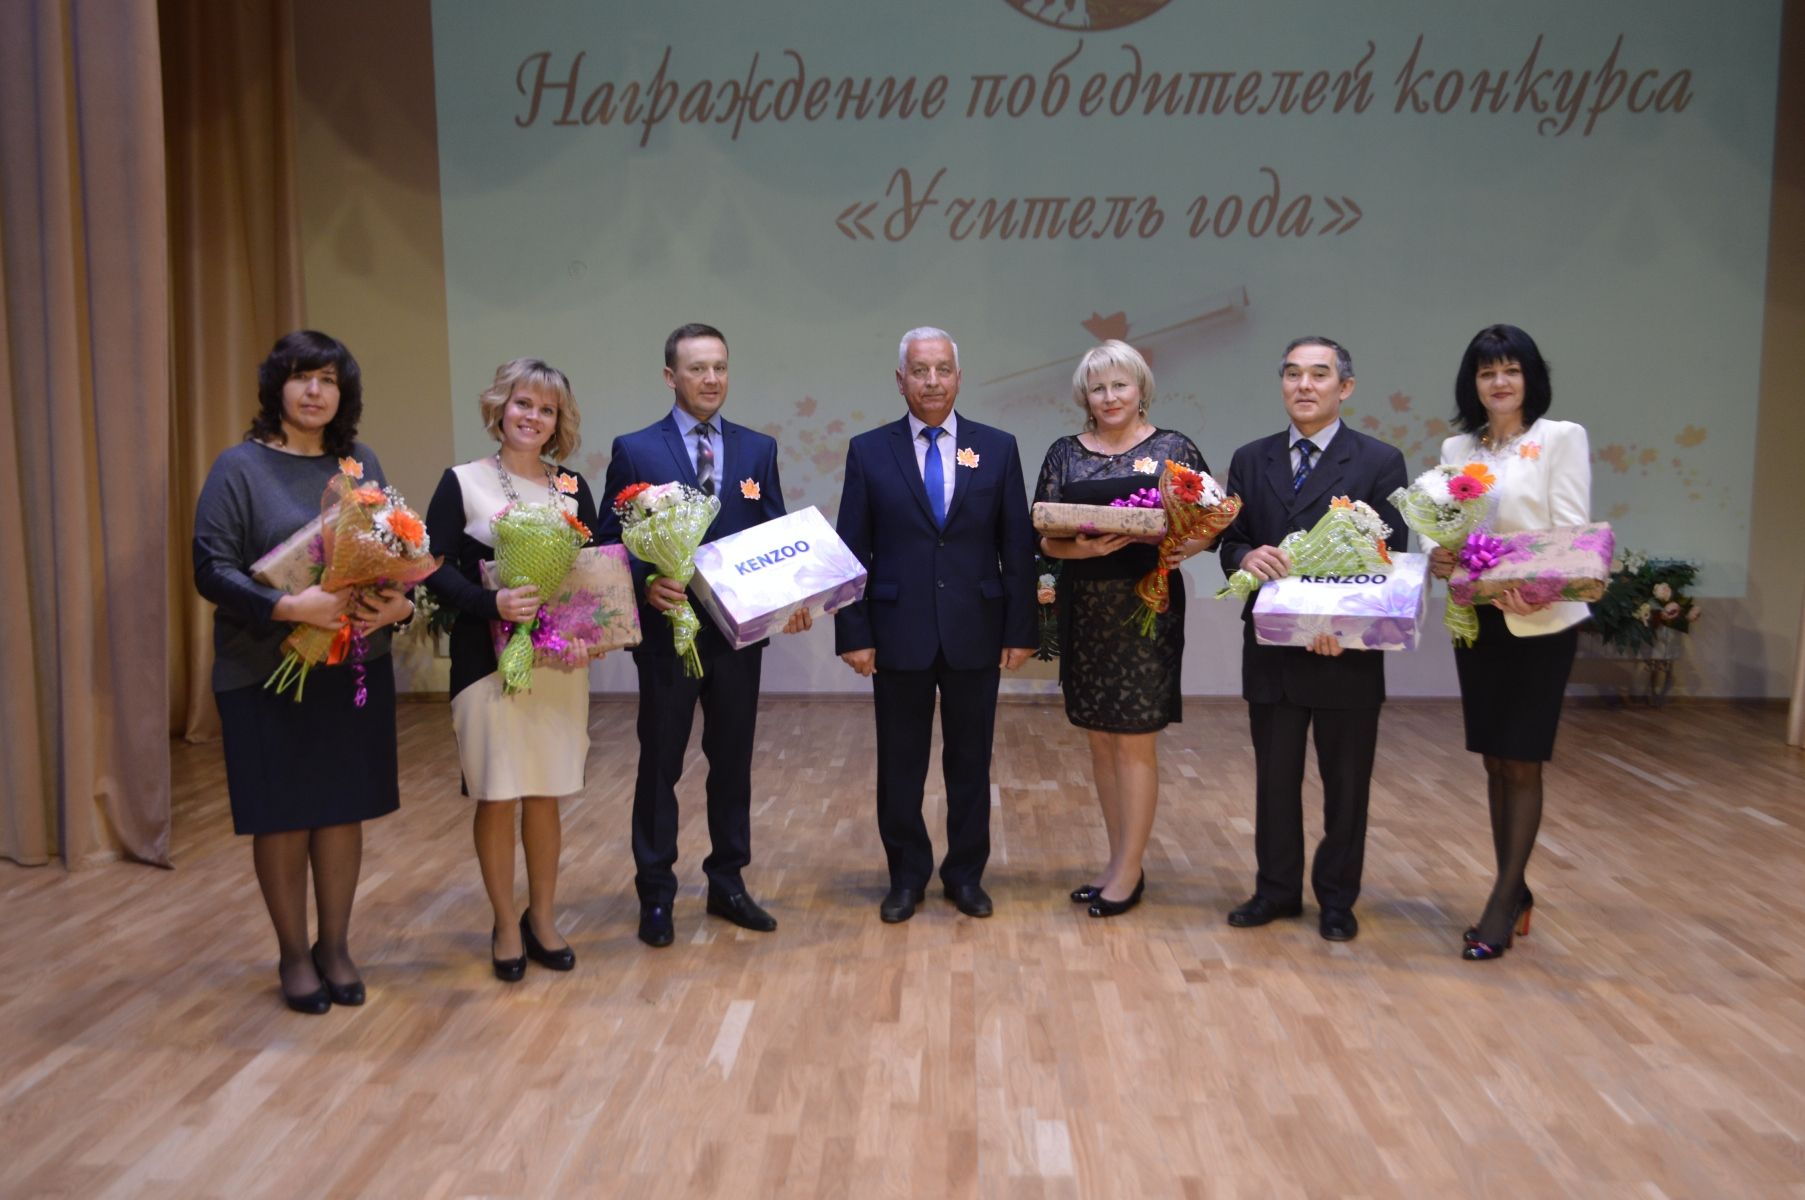 Учителя Рыбно-Слободского района торжественно отметили свой профессиональный праздник